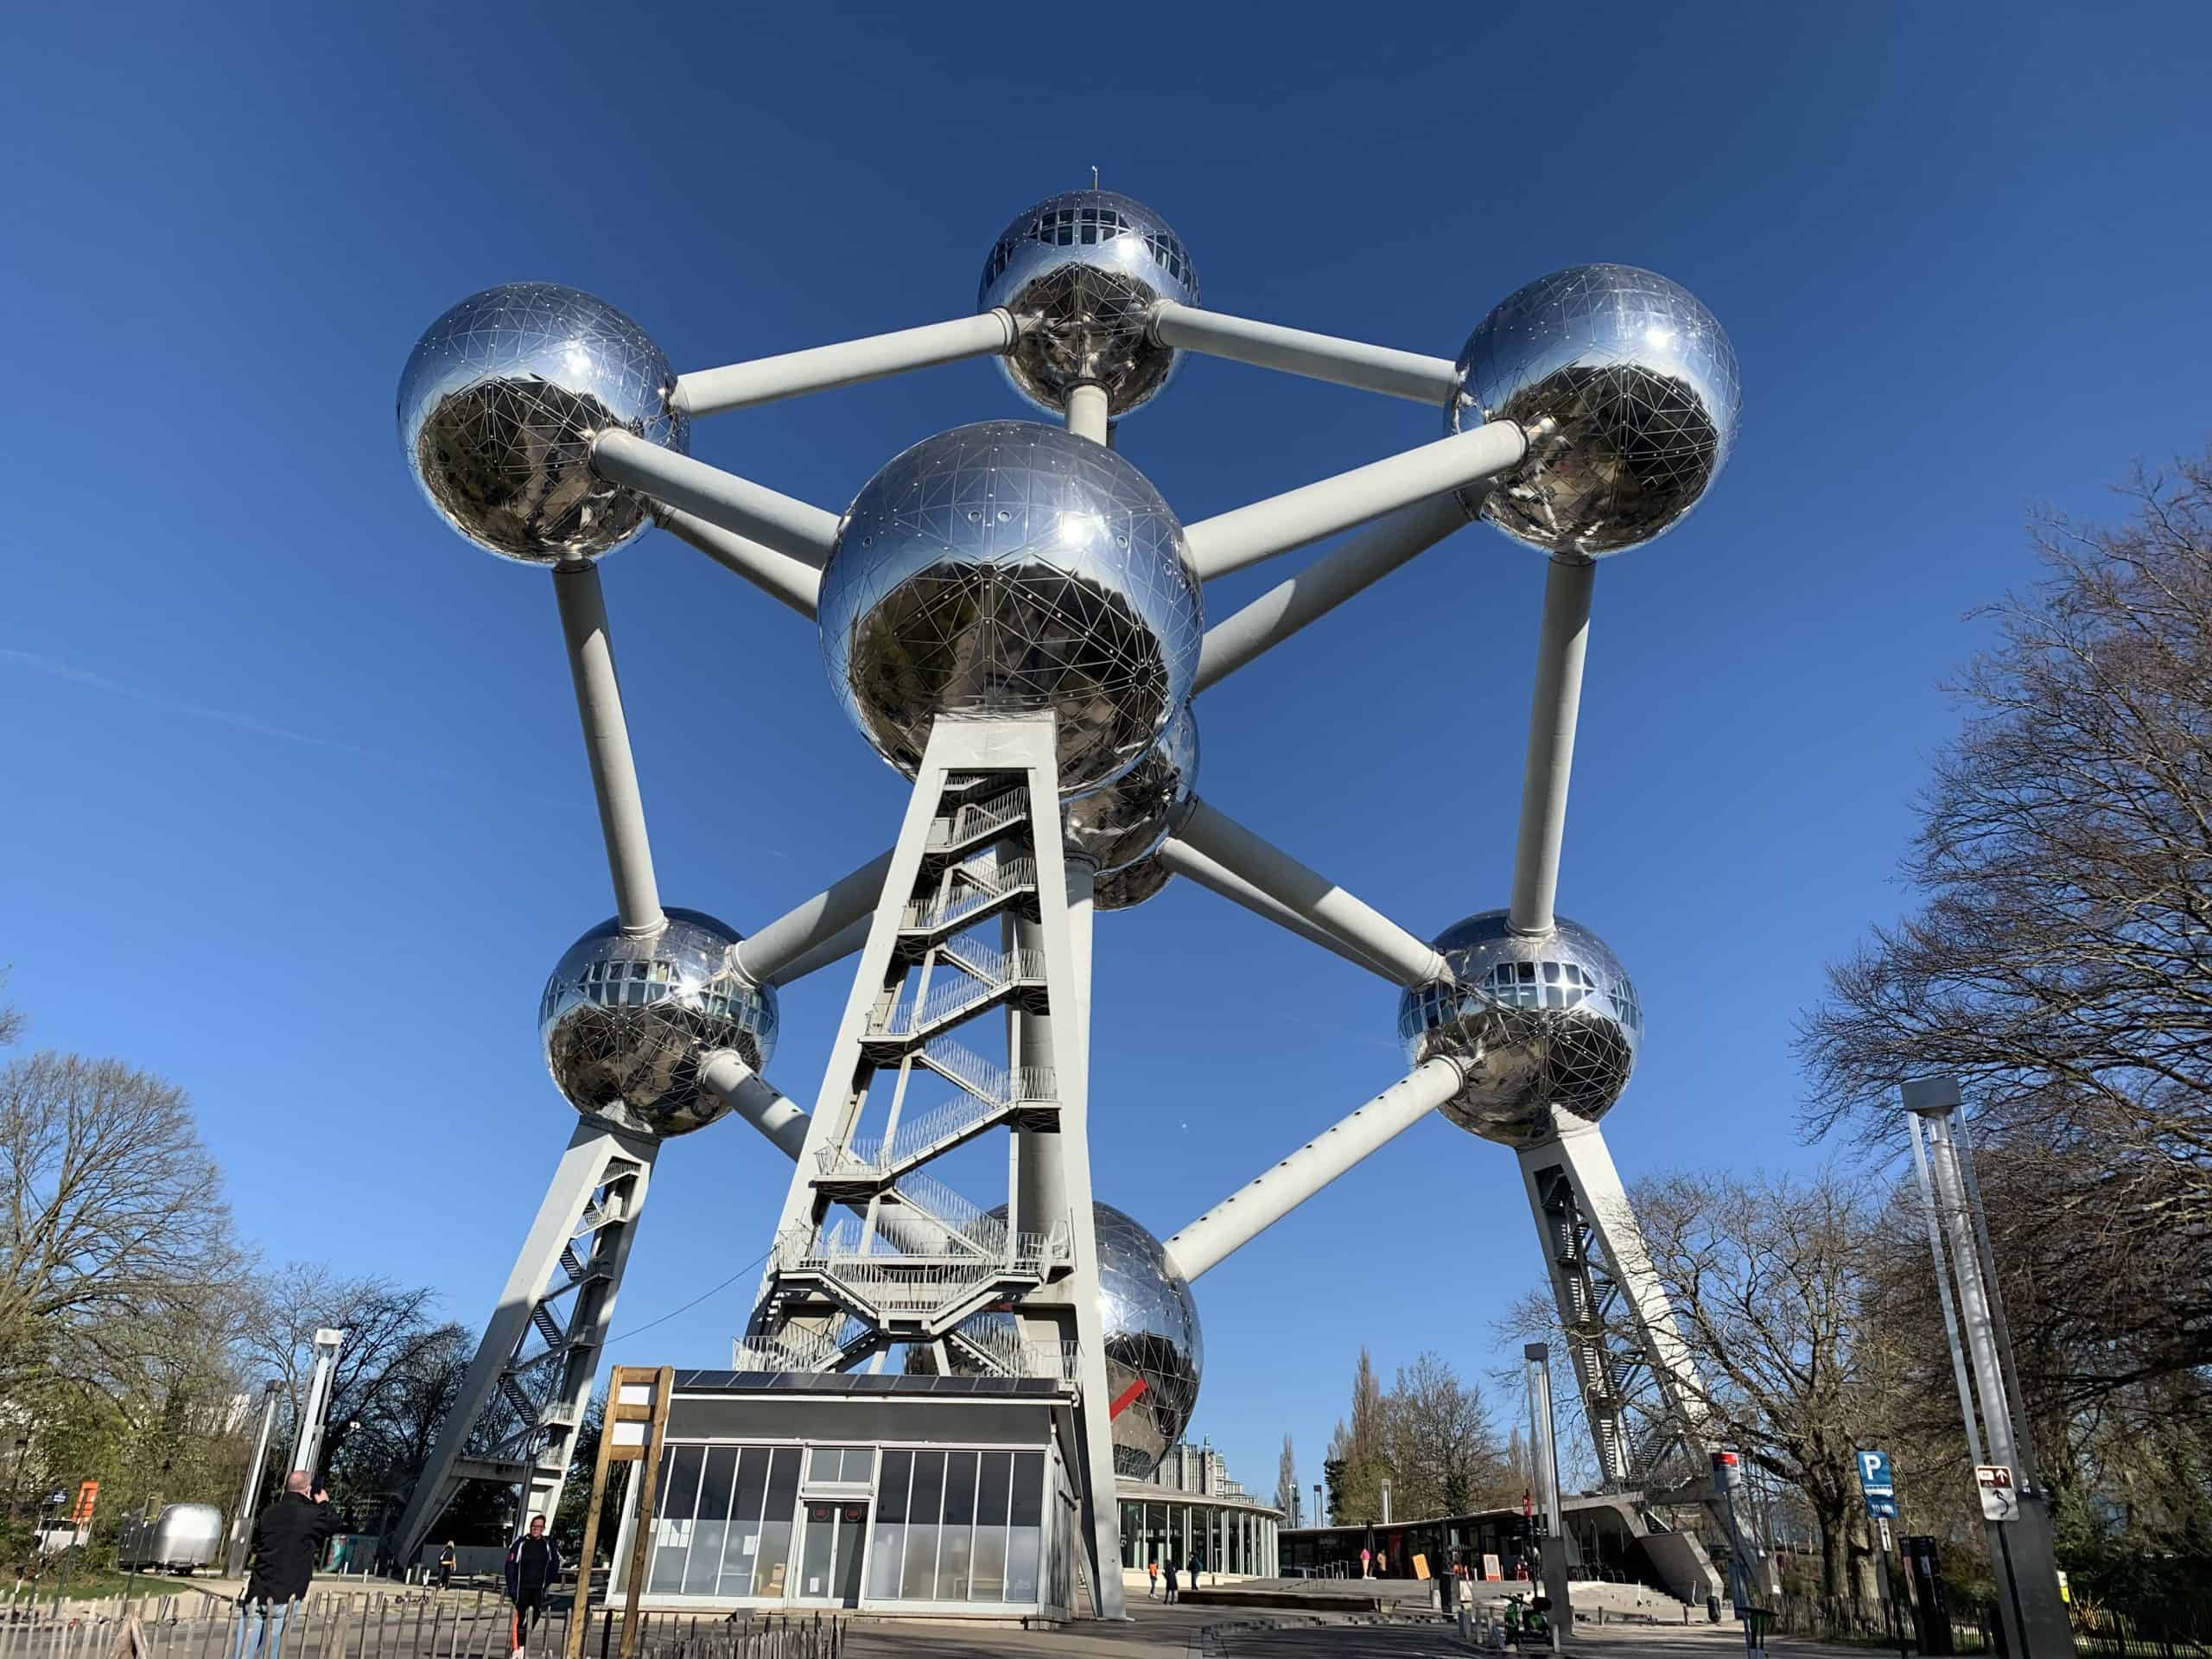 Atomium – Brussels